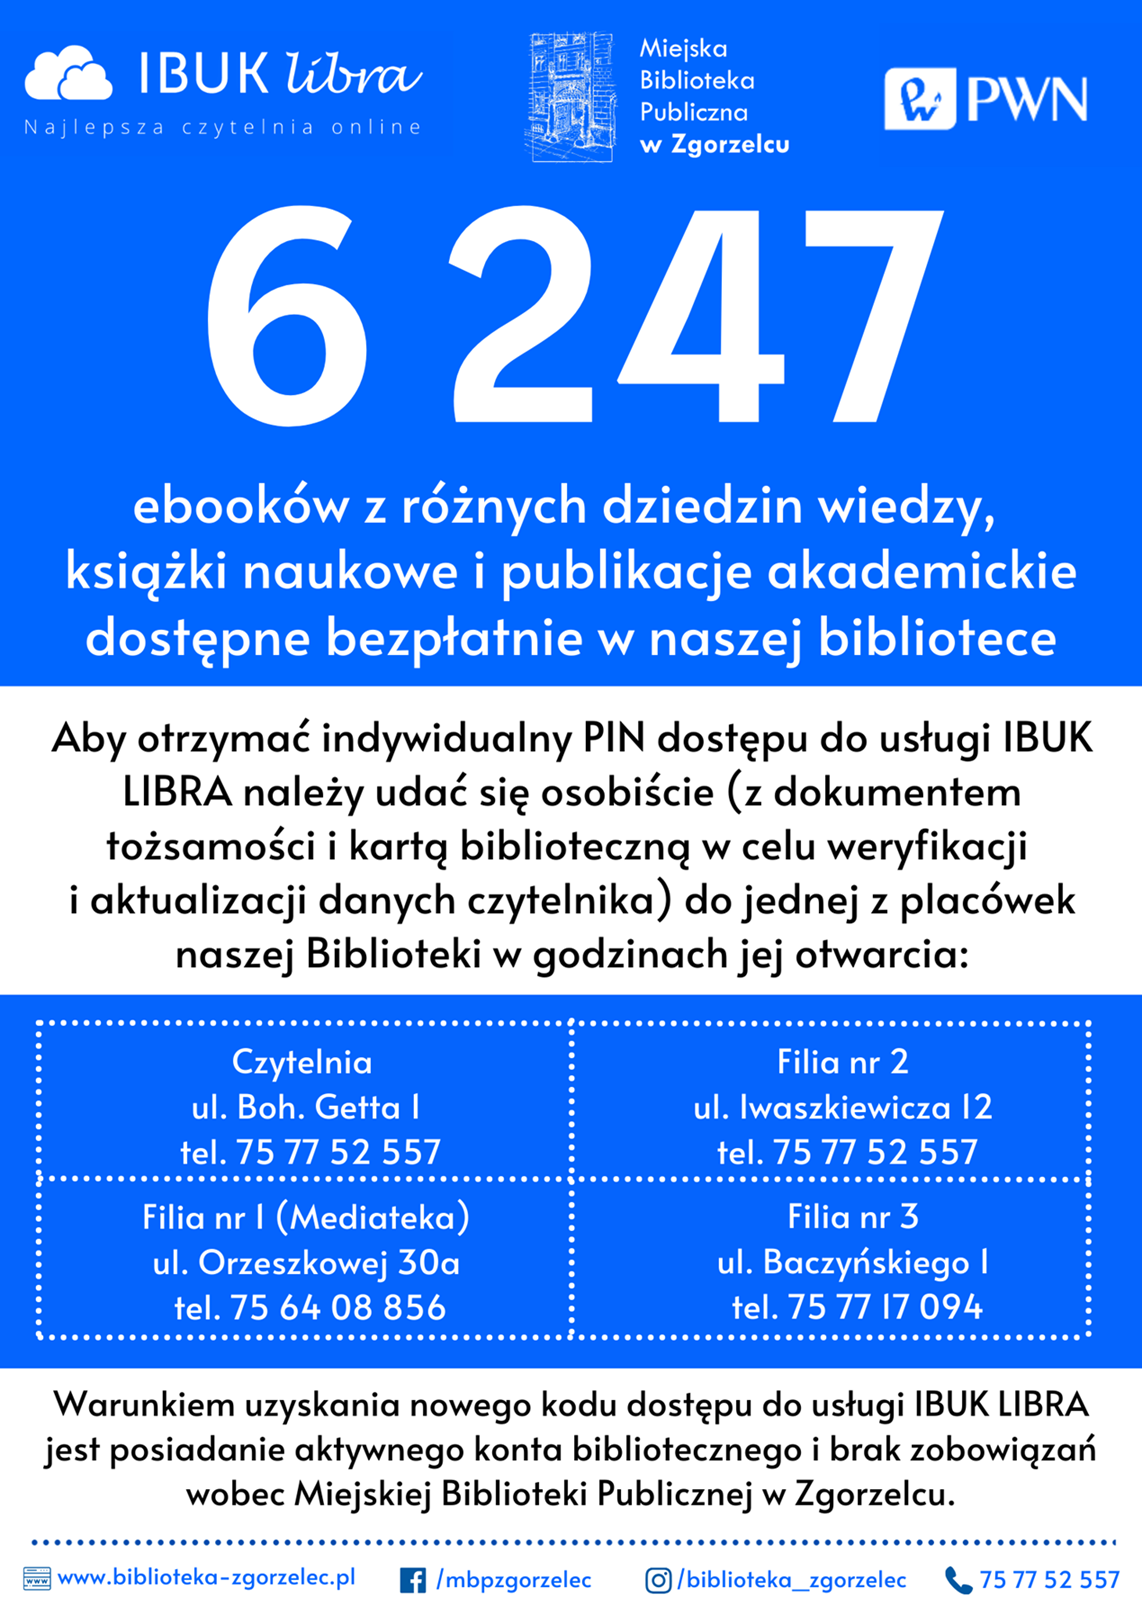 Plakat promujący usługę IBUK Libra.